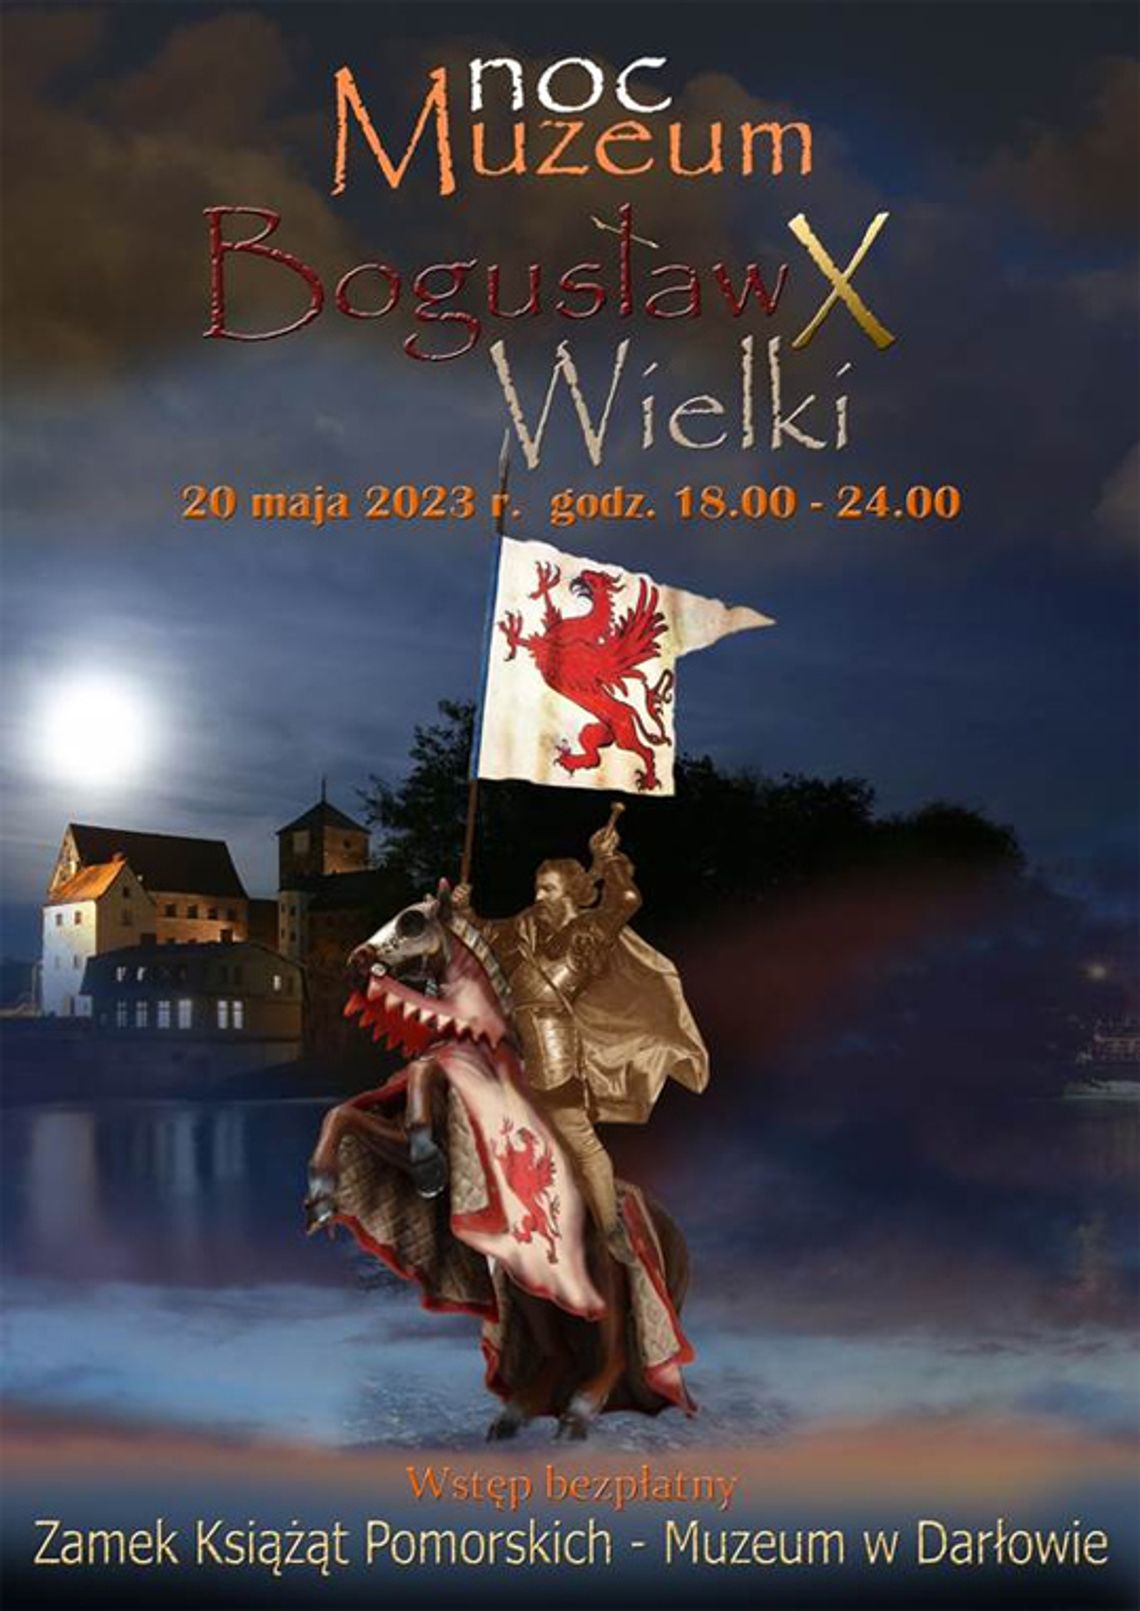 Noc Muzeum „Bogusław X Wielki”